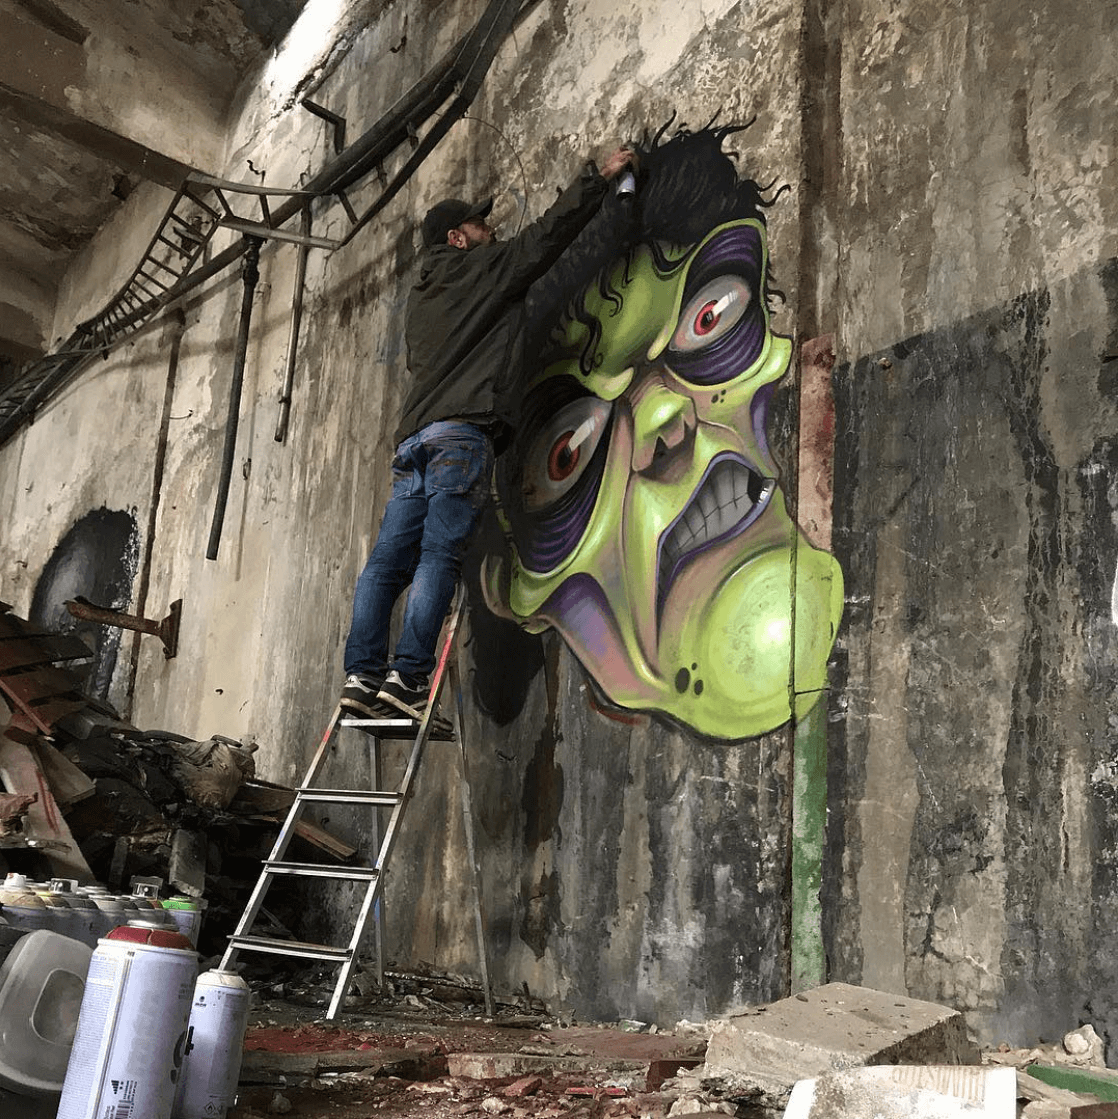 The Amazing Horror Graffiti of Artist David Lozano